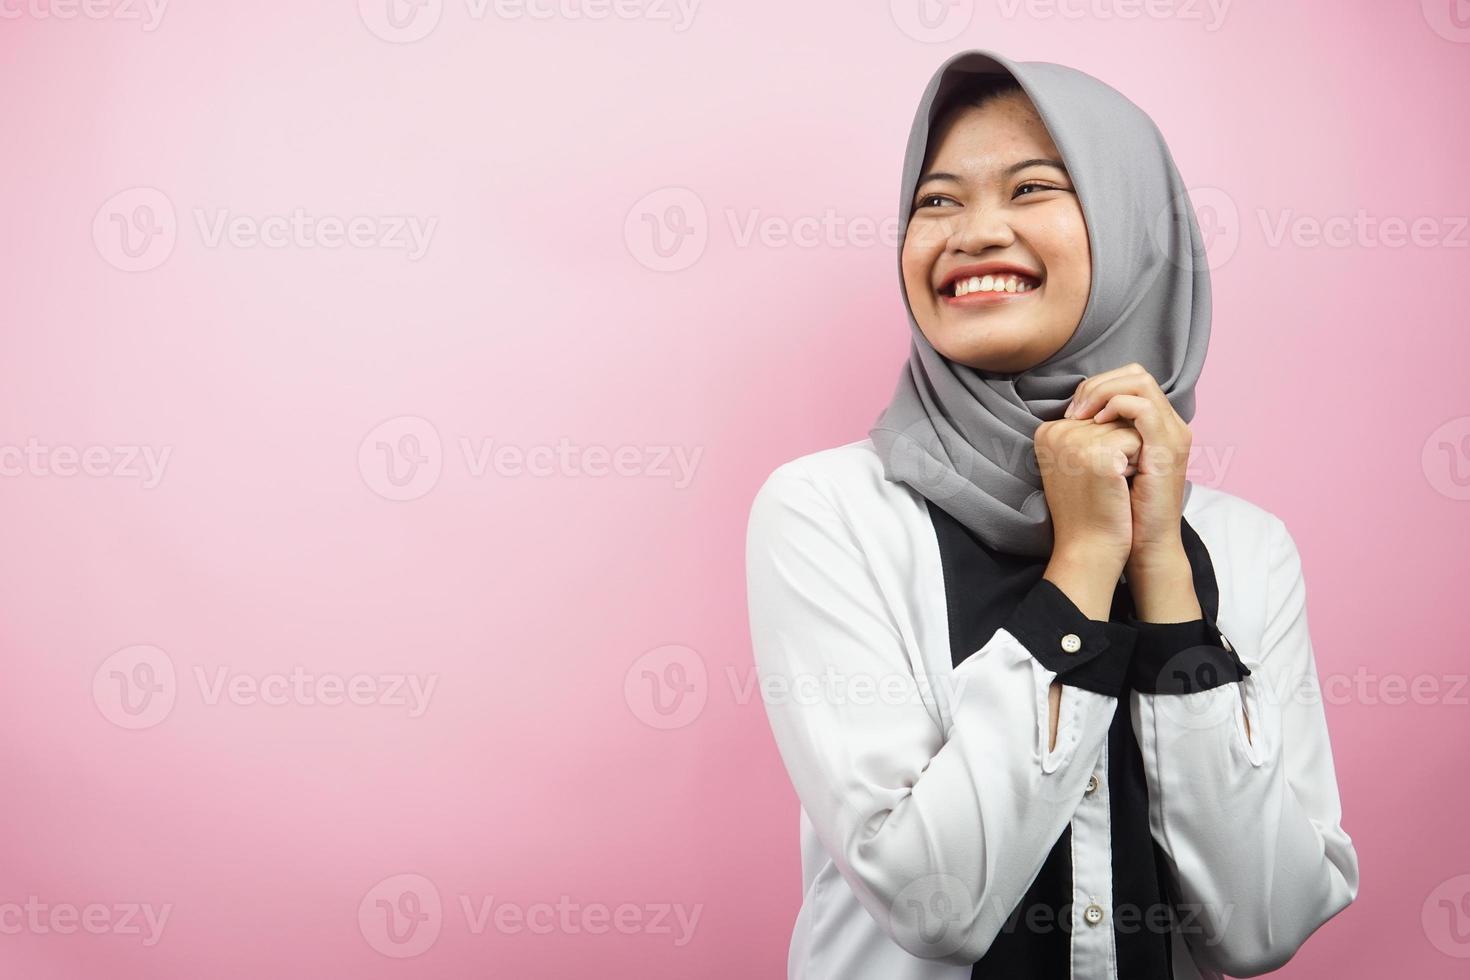 mooie jonge aziatische moslimvrouw zelfverzekerd en vrolijk ogende lege ruimte die iets presenteert, geïsoleerd op roze achtergrond foto